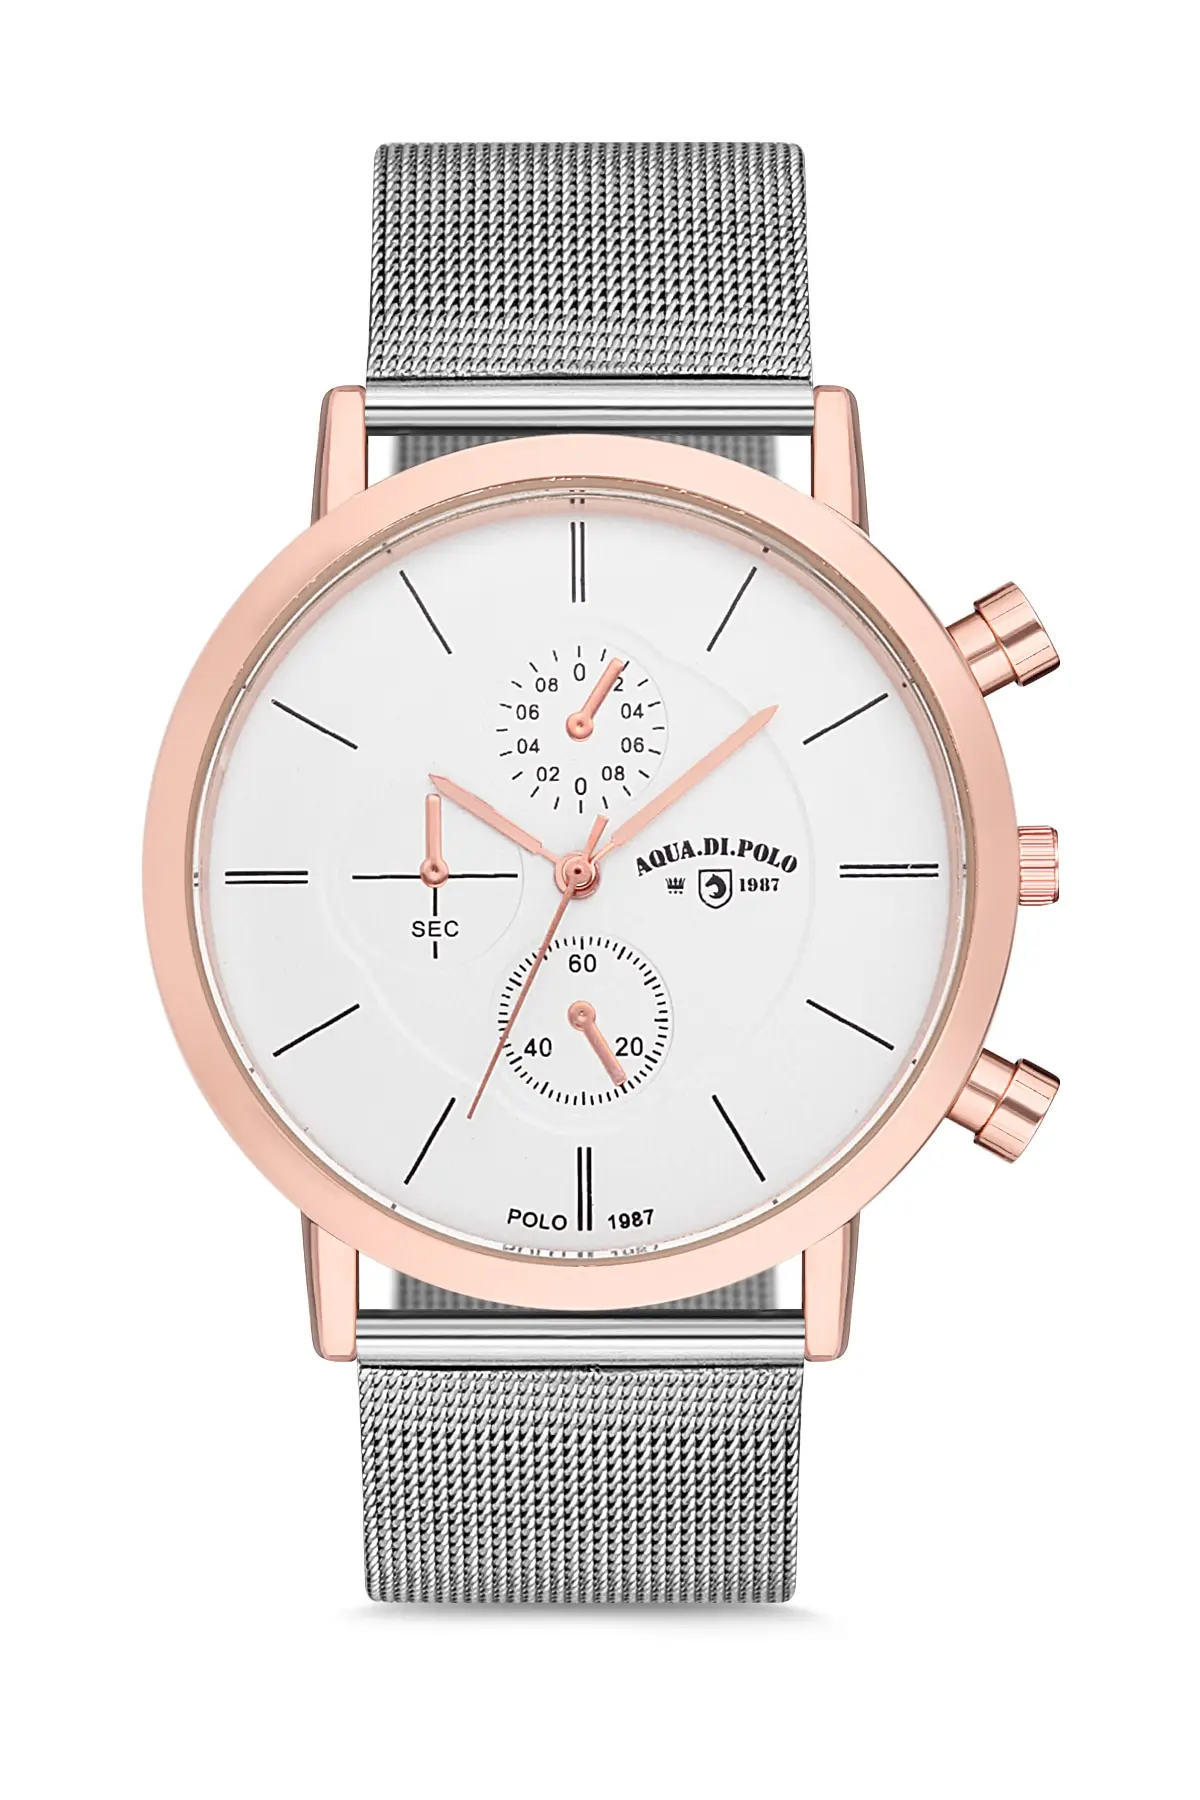 

2021 мужские роскошные модные серебристые стальные кварцевые наручные часы от лучшего бренда APSR1-A9711-EH152 Aqua di Polo 1987